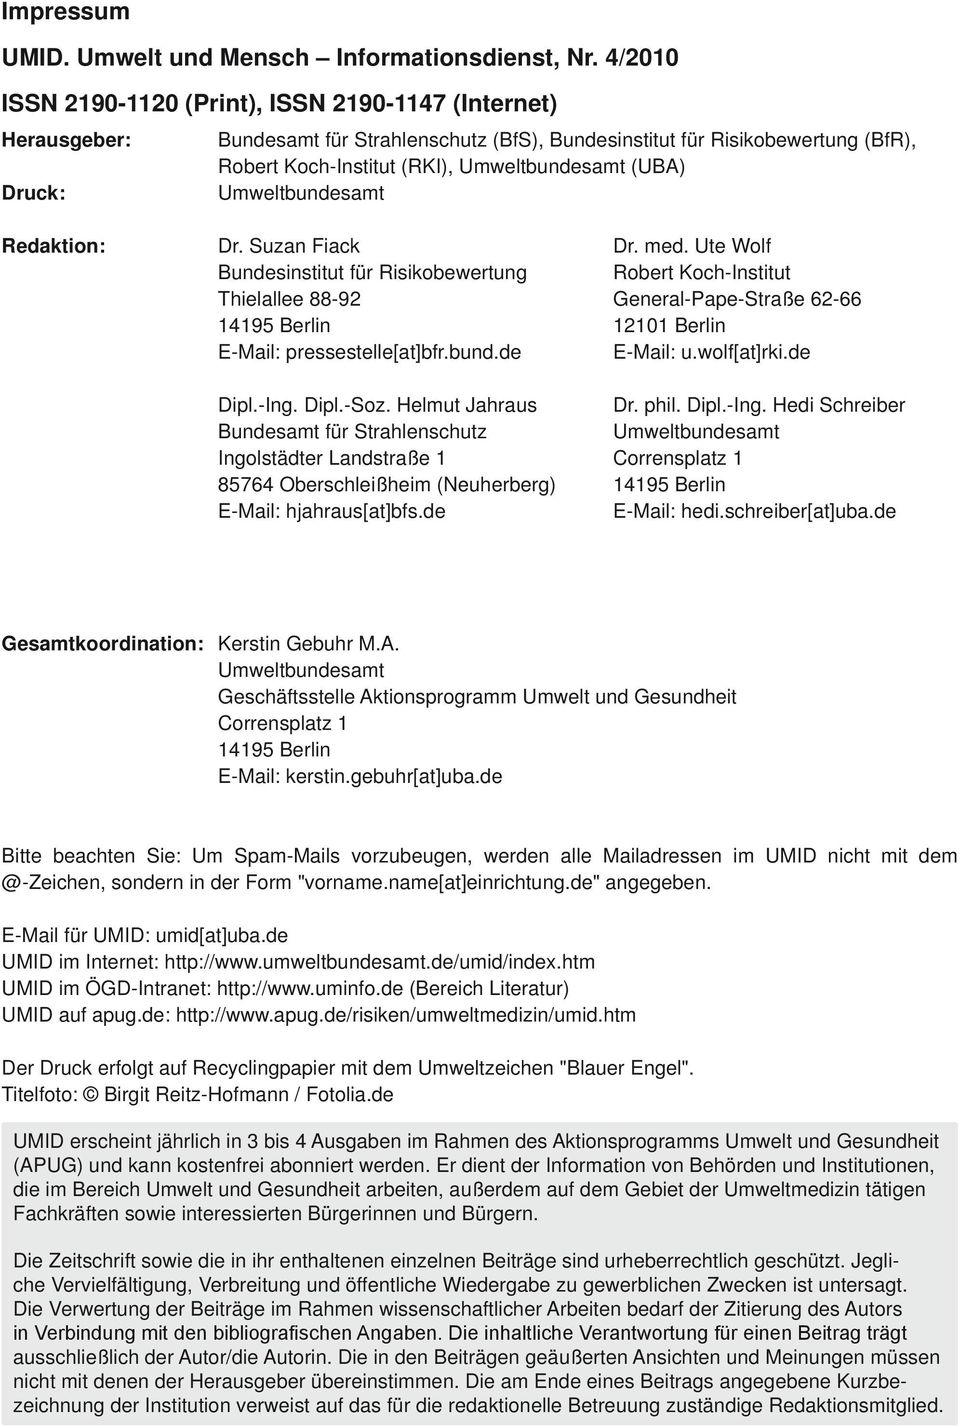 Druck: Umweltbundesamt Redaktion: Dr. Suzan Fiack Bundesinstitut für Risikobewertung Thielallee 88-92 14195 Berlin E-Mail: pressestelle[at]bfr.bund.de Dipl.-Ing. Dipl.-Soz.